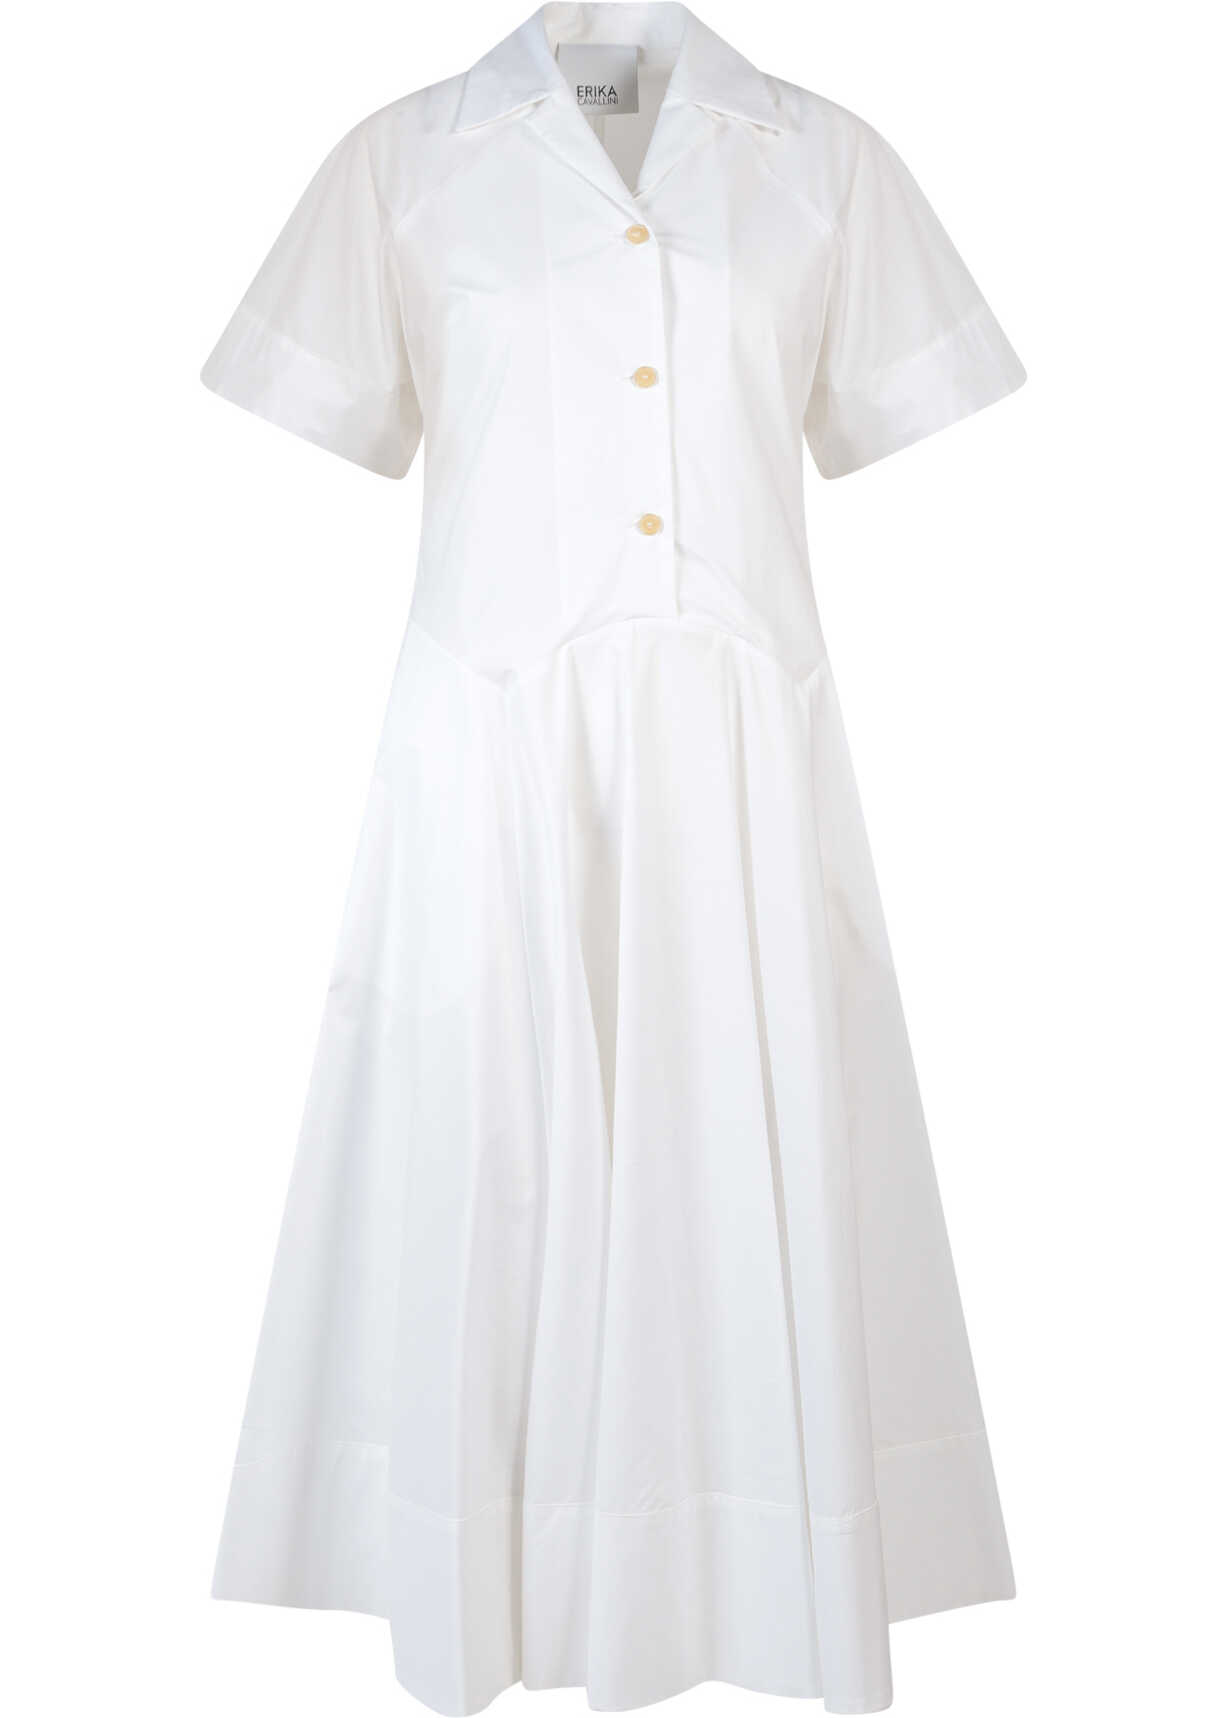 Erika Cavallini Dress White